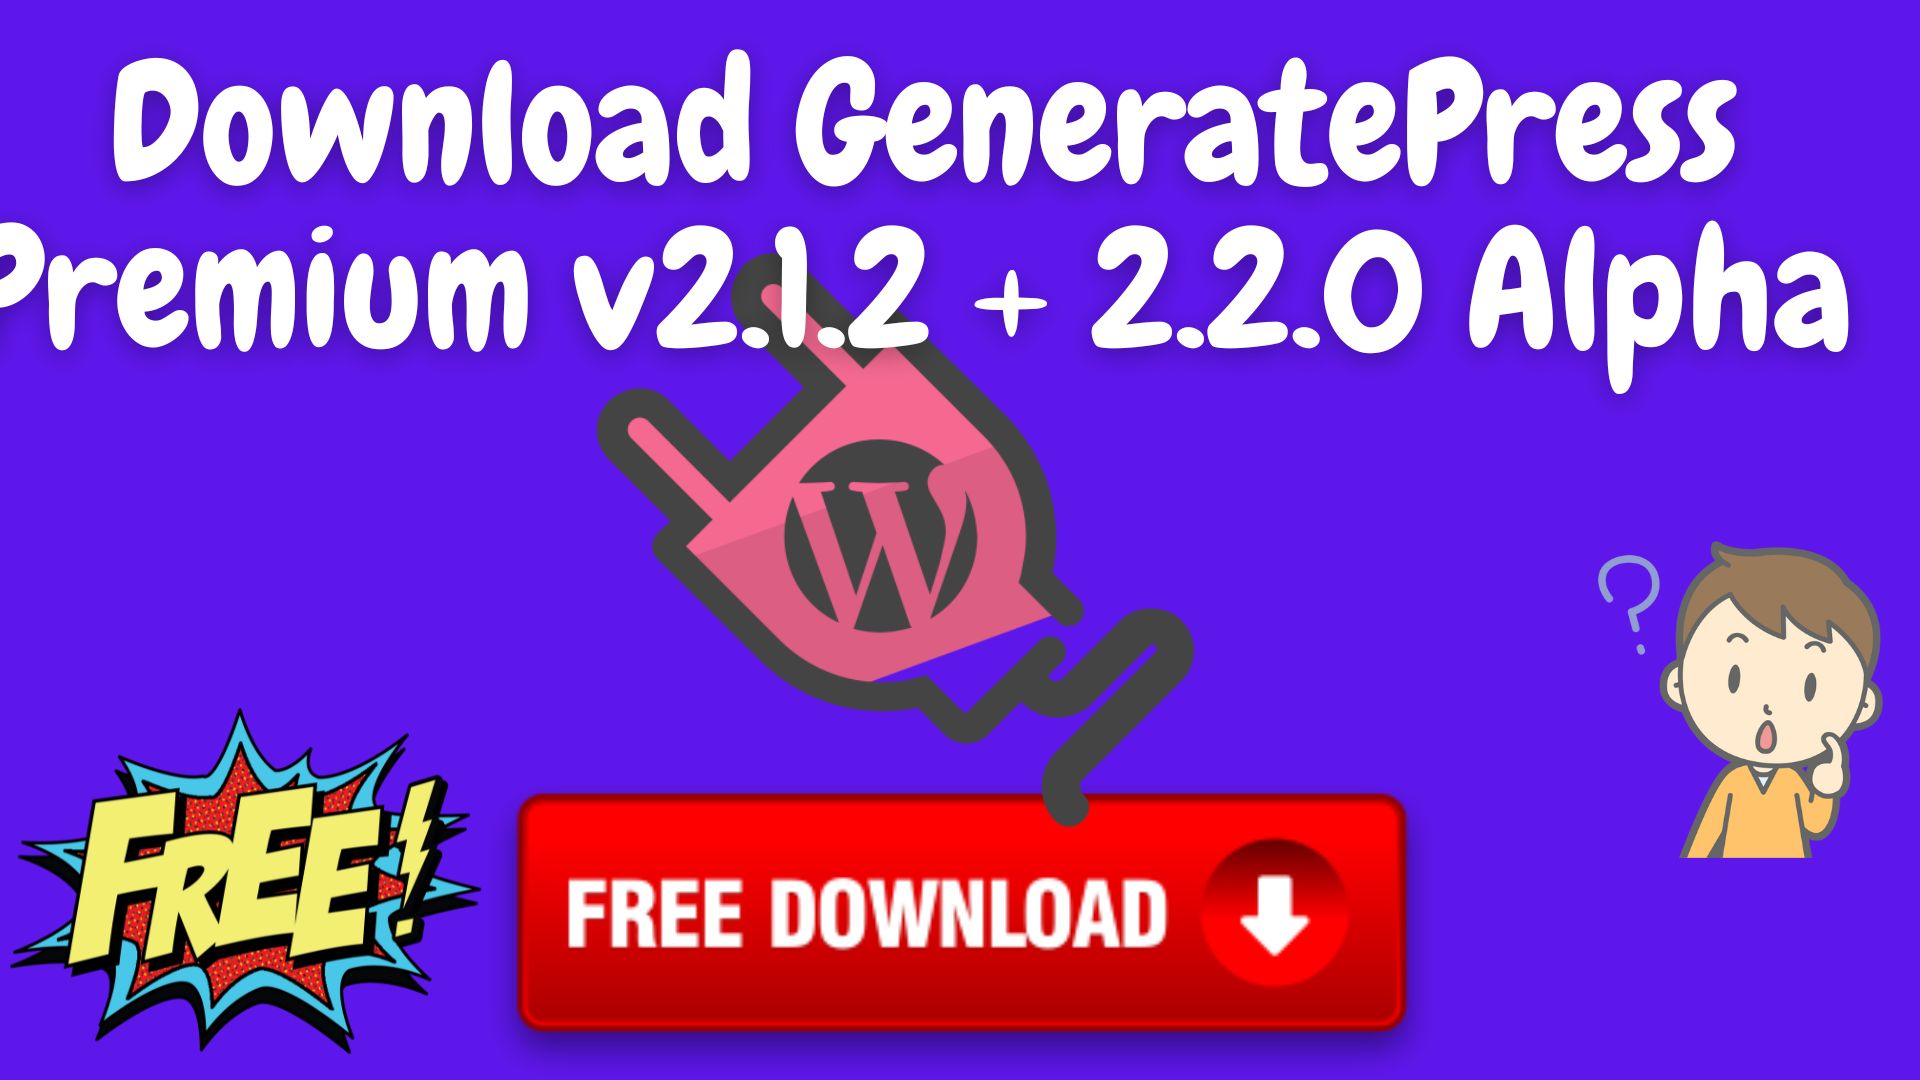 Download generatepress premium v2. 1. 2 + 2. 2. 0 alpha